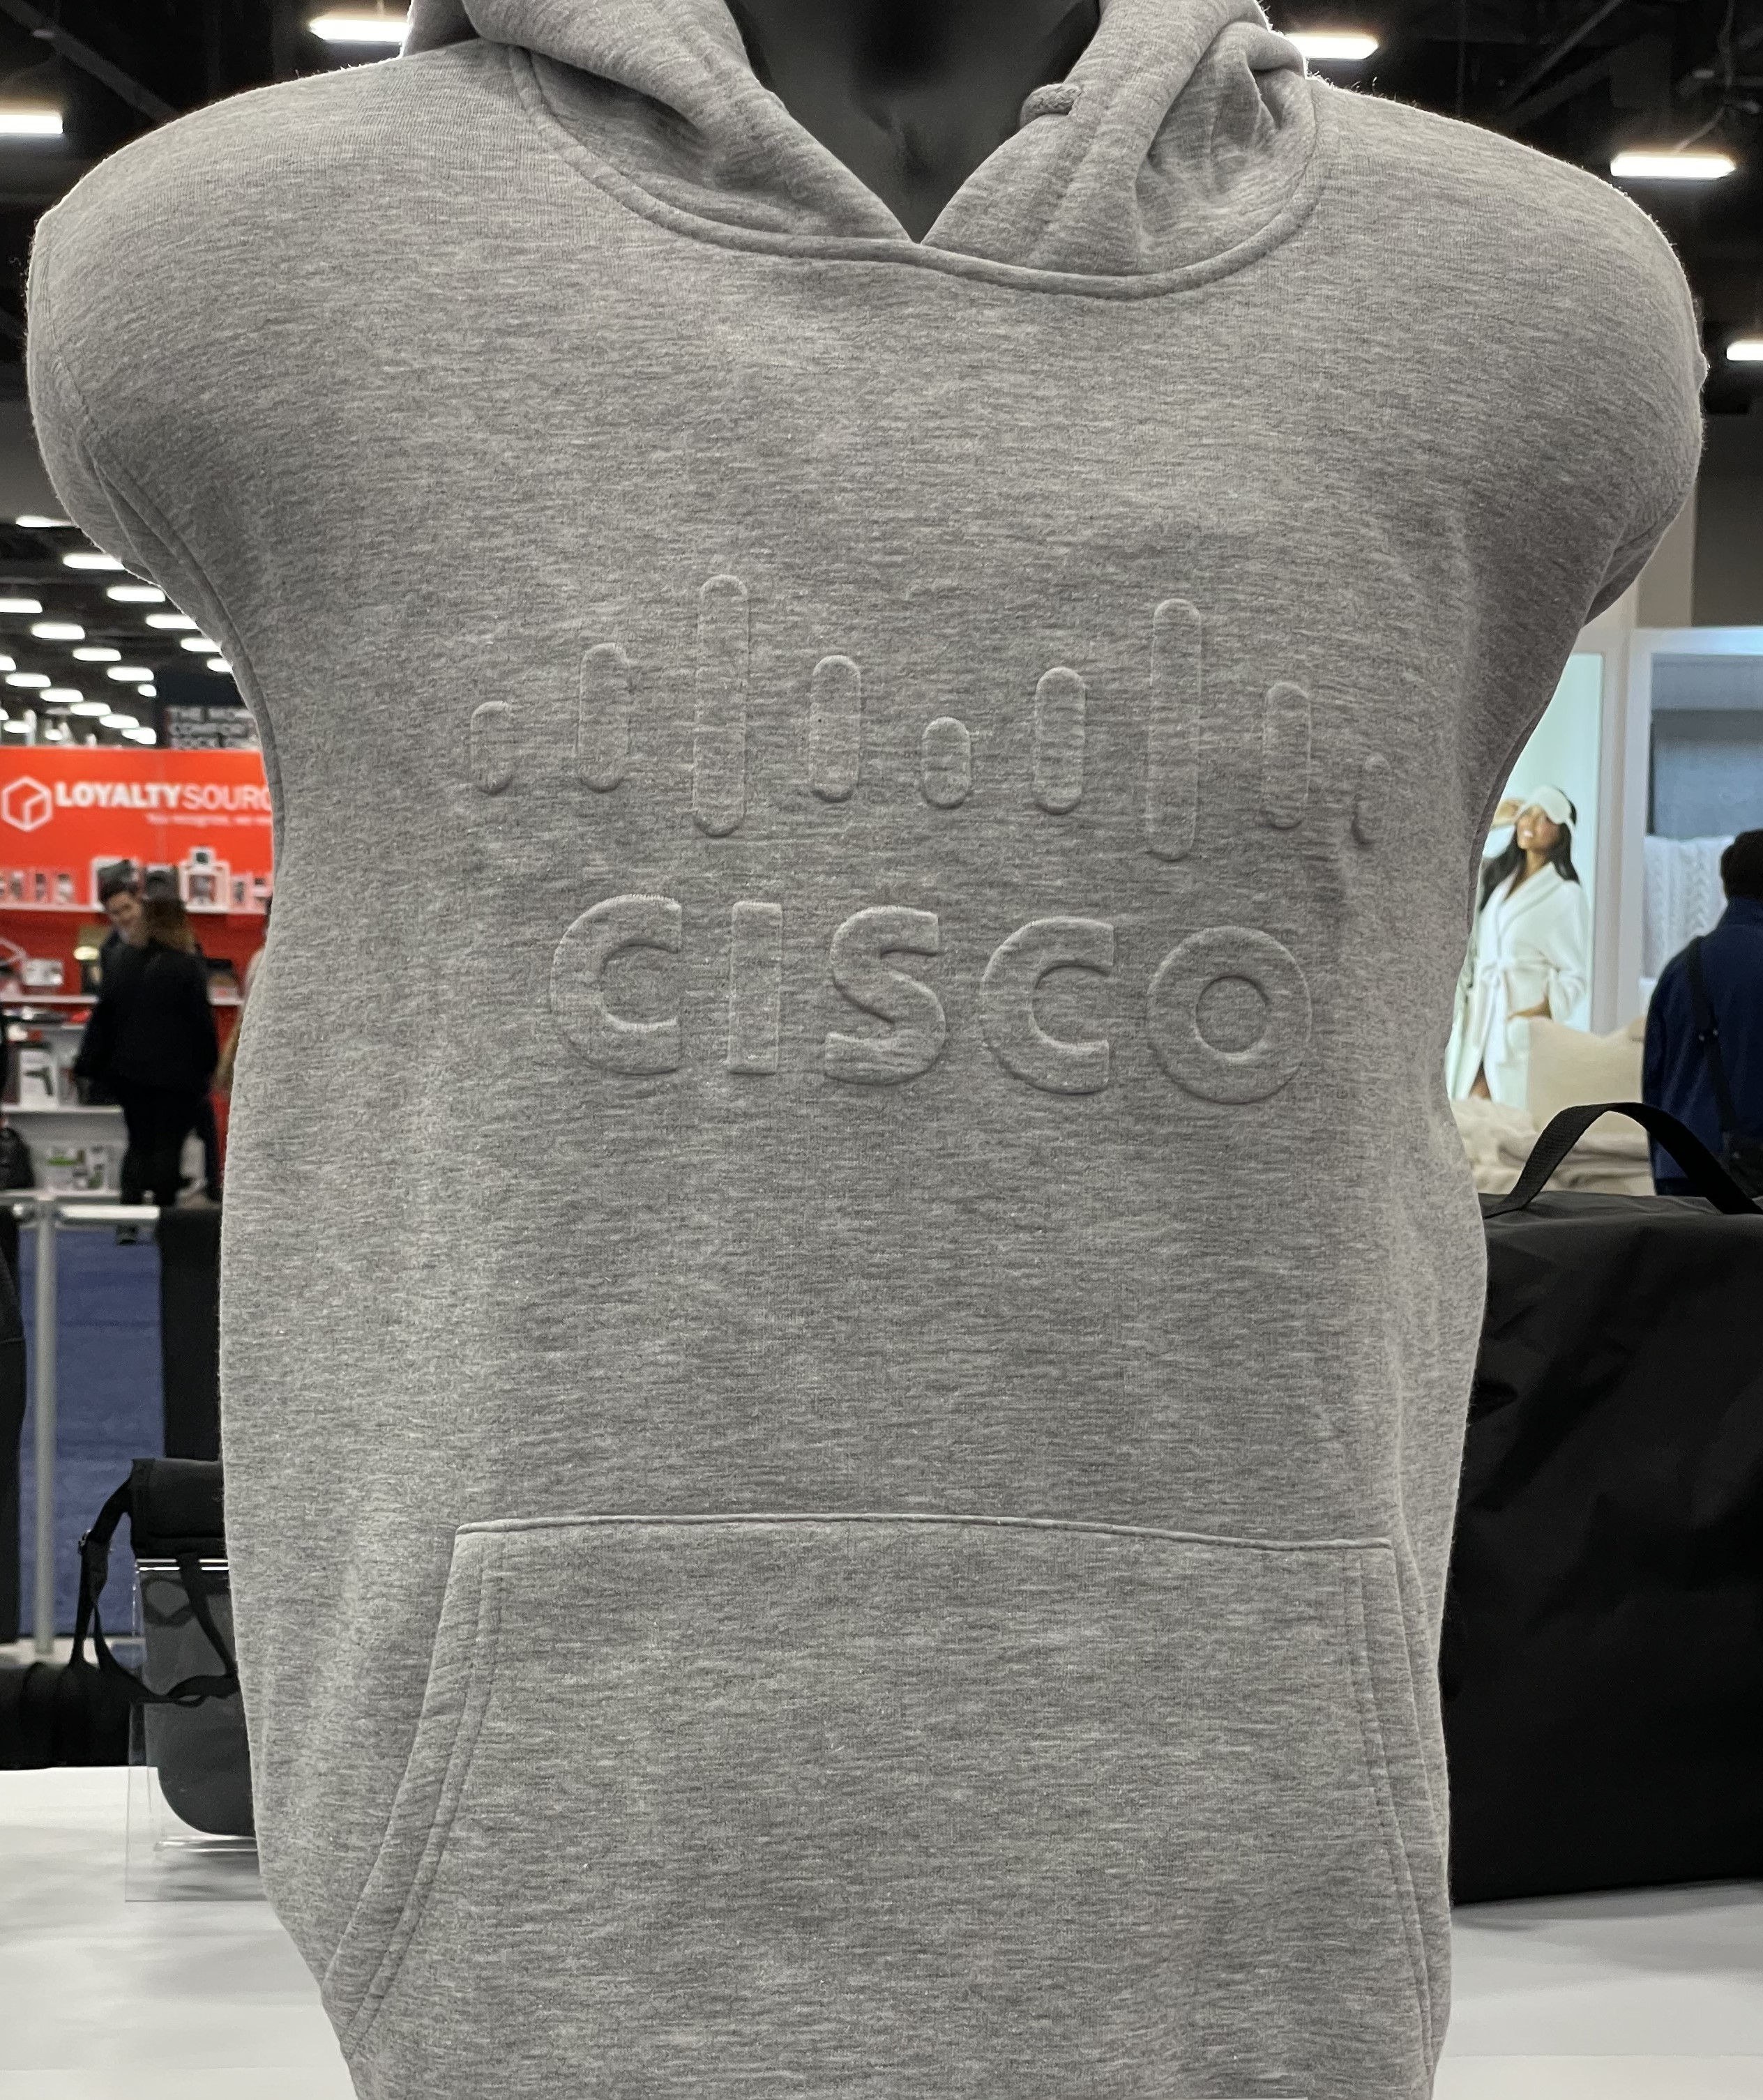 Cisco logo using embossed decoration technique